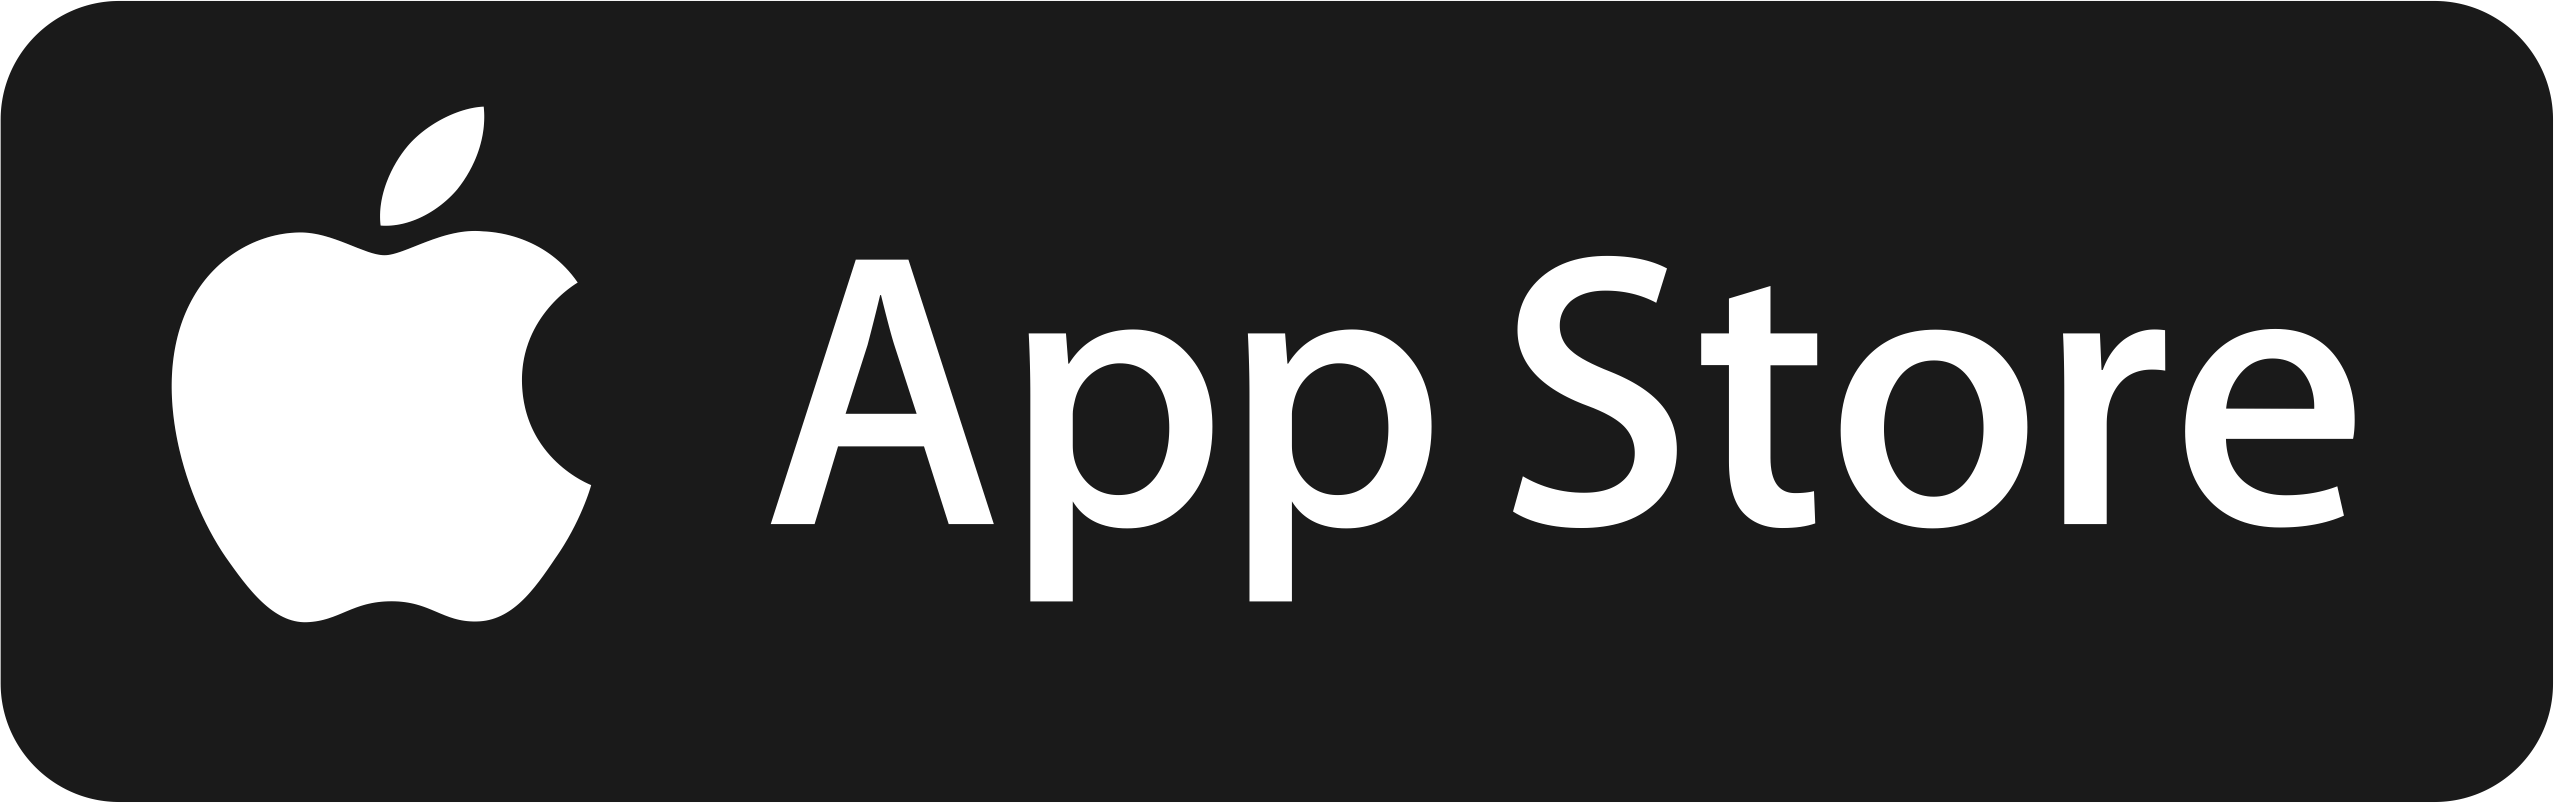 app-store-scrape.png